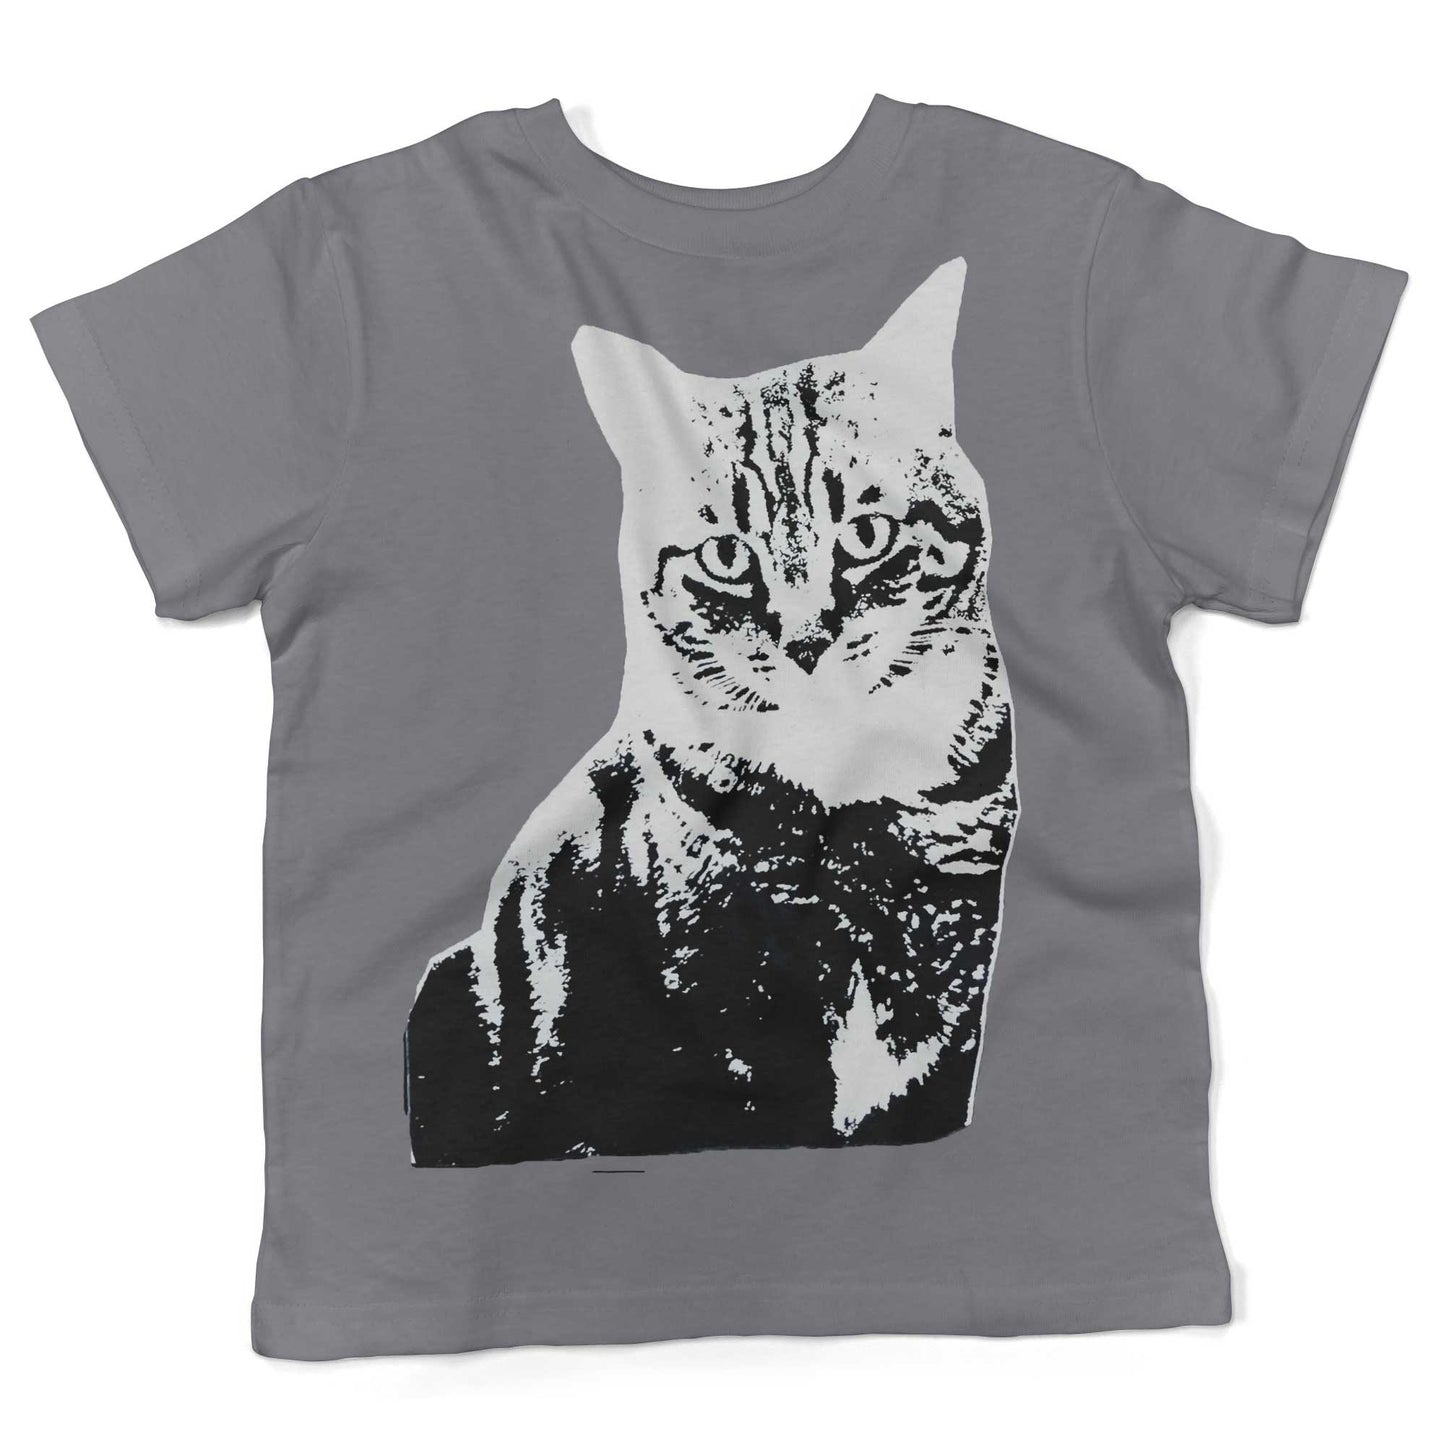 Black & White Cat Toddler Shirt-Slate-2T